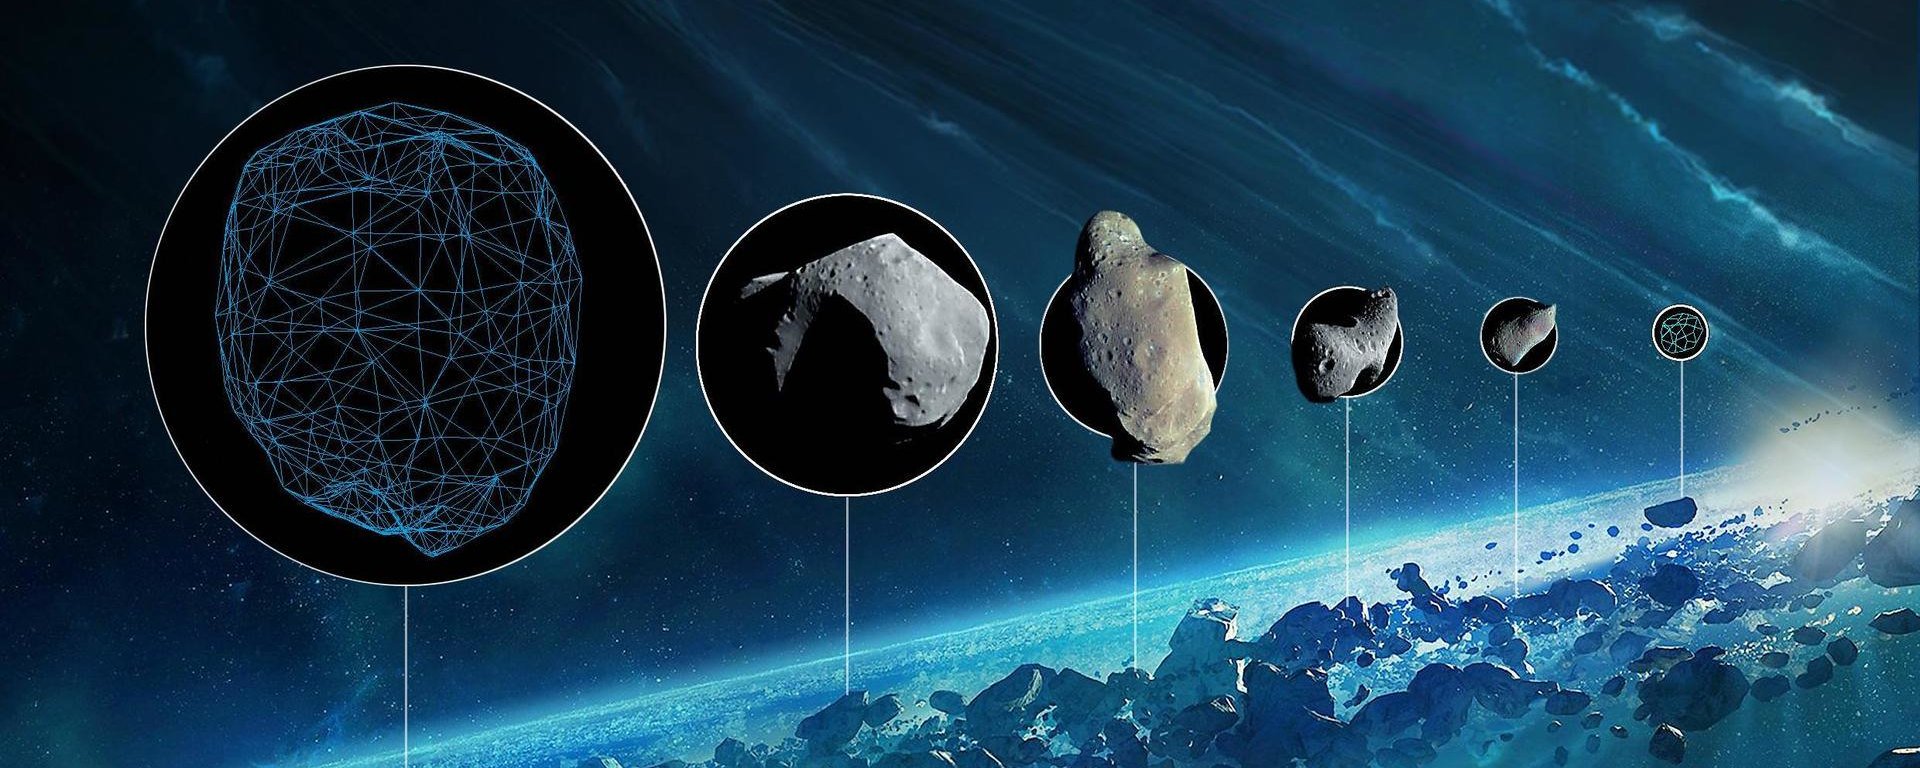 Esperimento con la pistola ha dimostrato che gli asteroidi potrebbero portare l'acqua sulla Terra